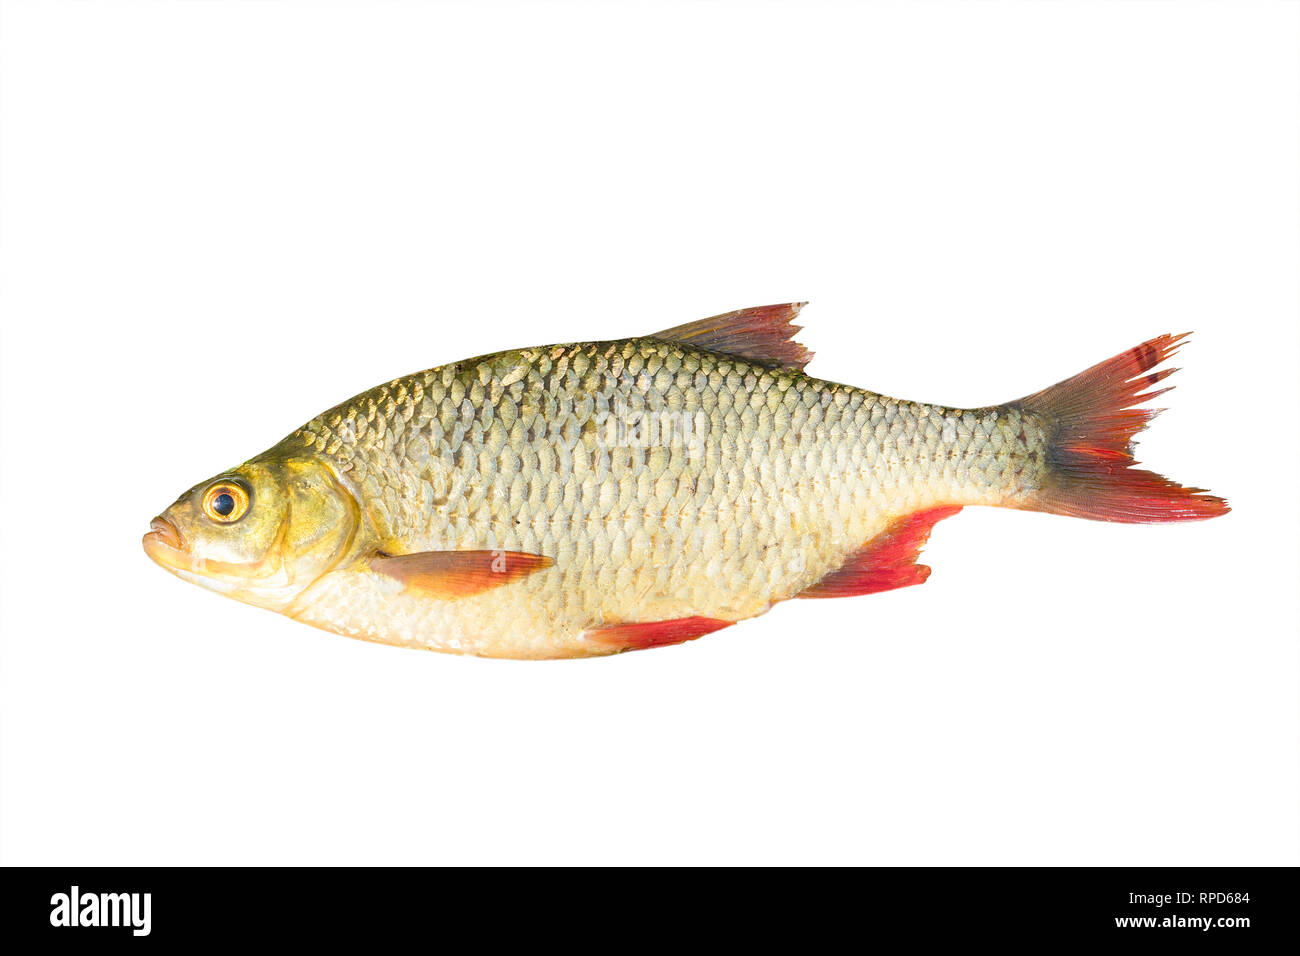 Fisch mit roten Flossen Hintergrund Stockfotografie Alamy